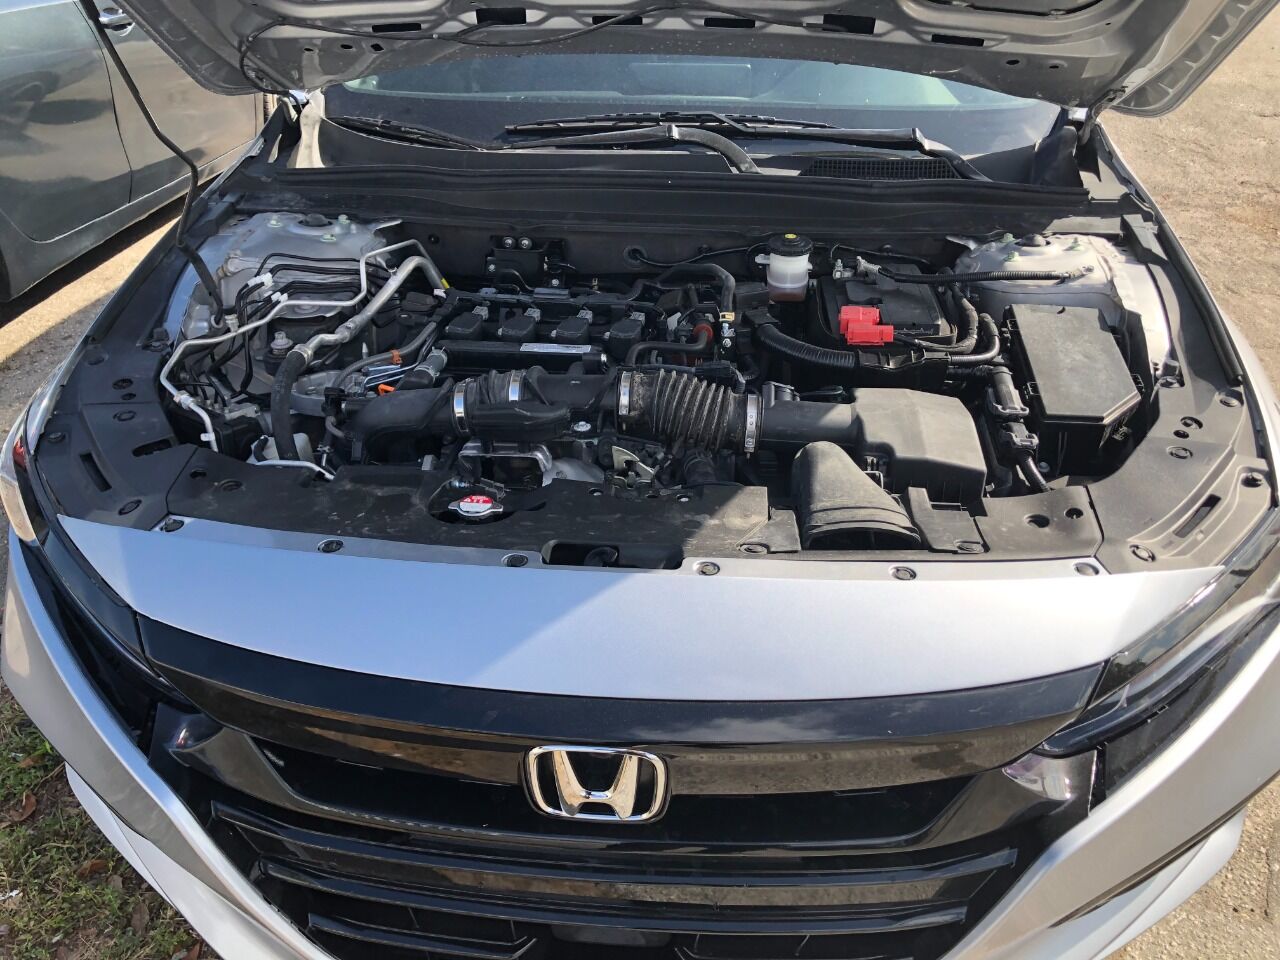 2019 Honda Accord Sedan - $18,900